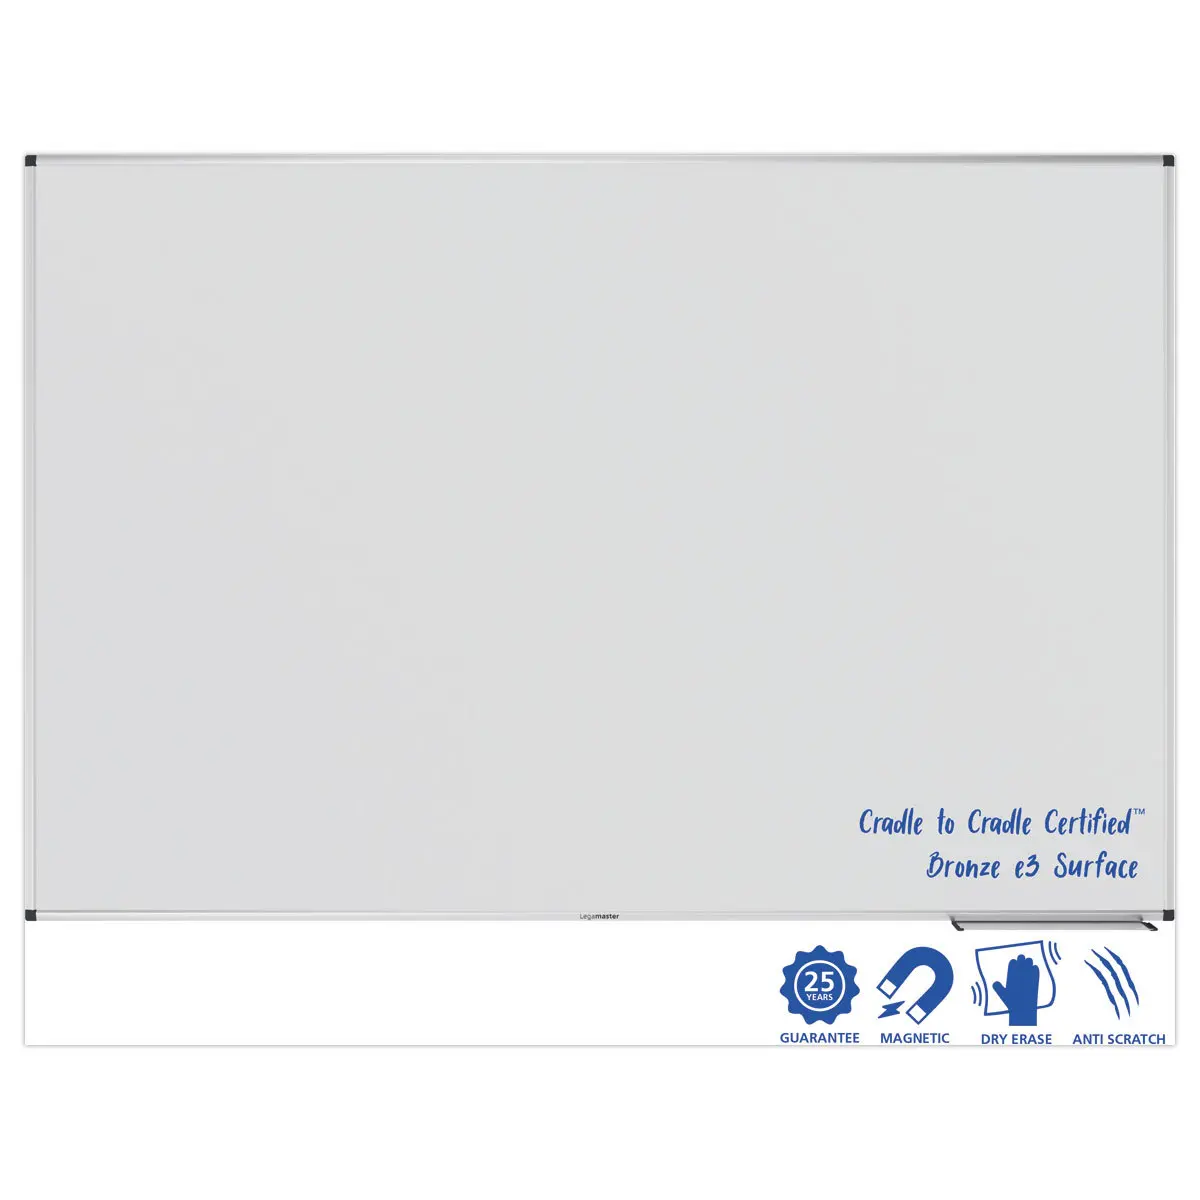 Tableau blanc Legamaster UNIVERSAL PLUS  120x180 cm photo du produit